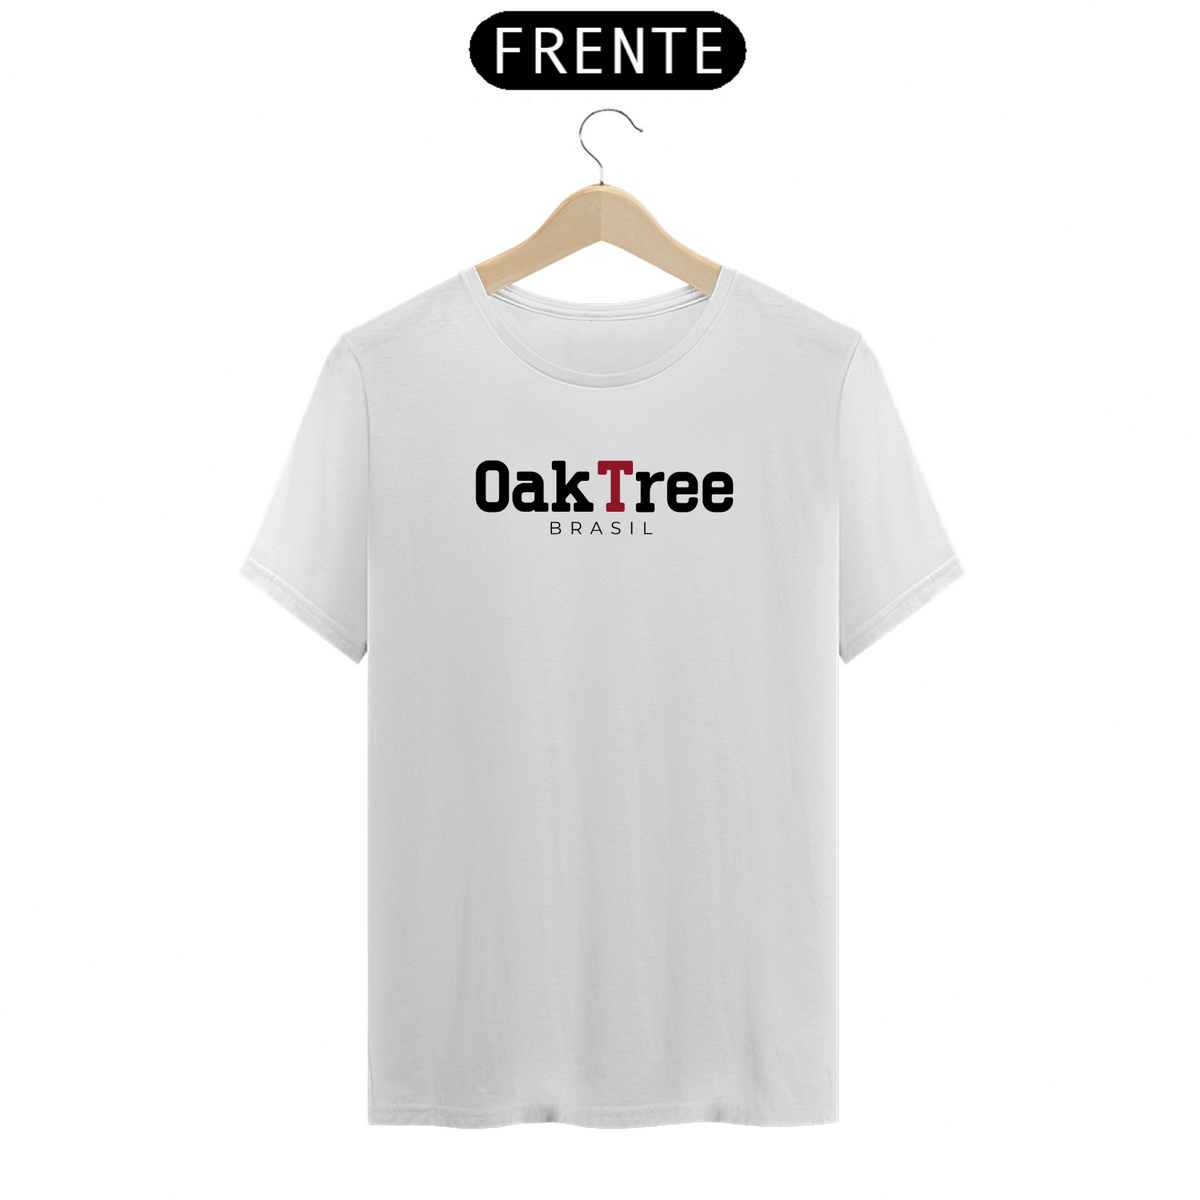 Nome do produto: OakTree Brasil - White Edition